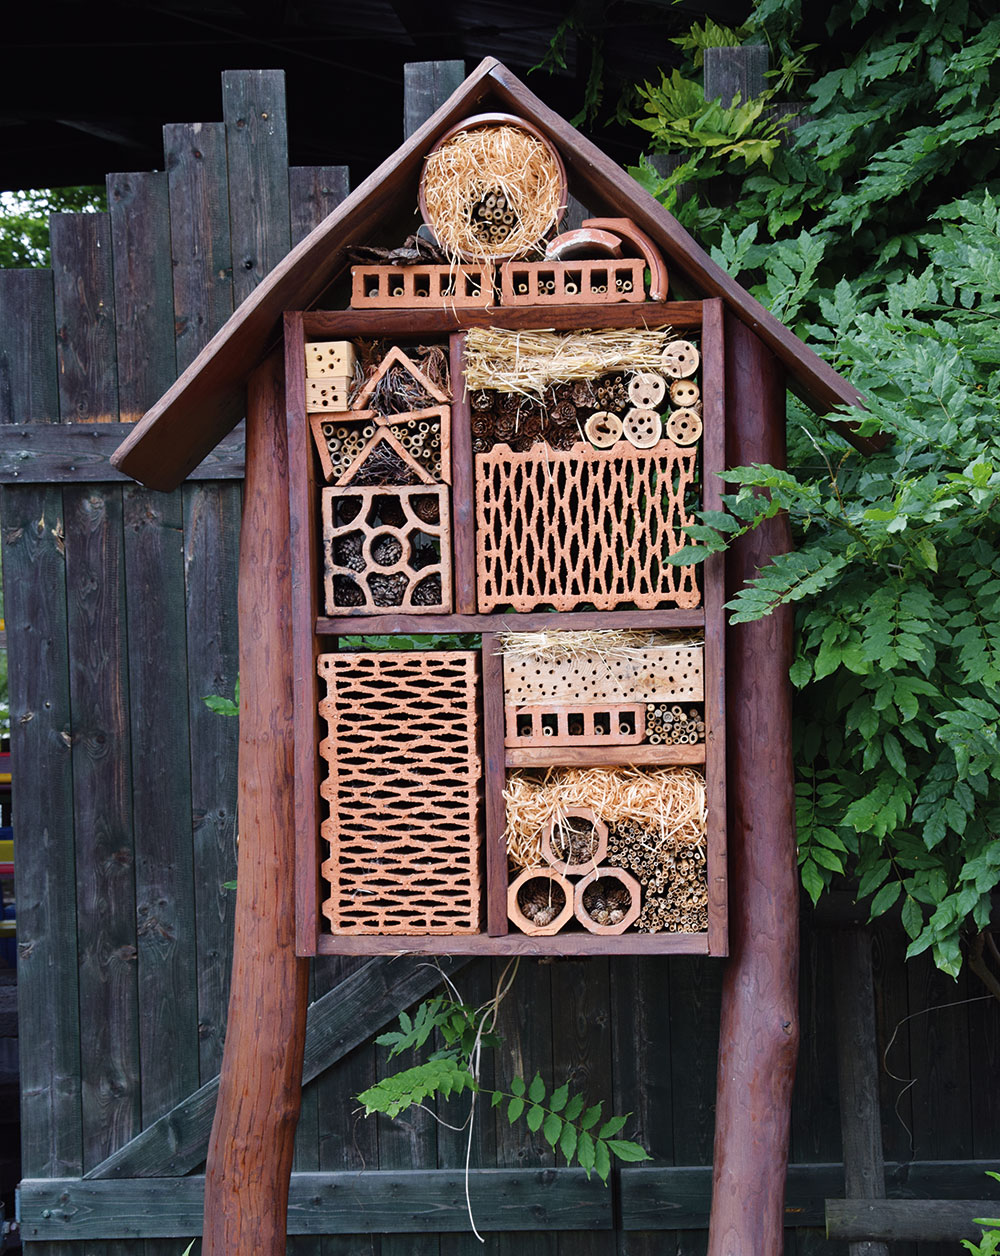 Hmyzí domek se může stát pěknou dekorací zahrady. FOTO LUCIE PEUKERTOVÁ